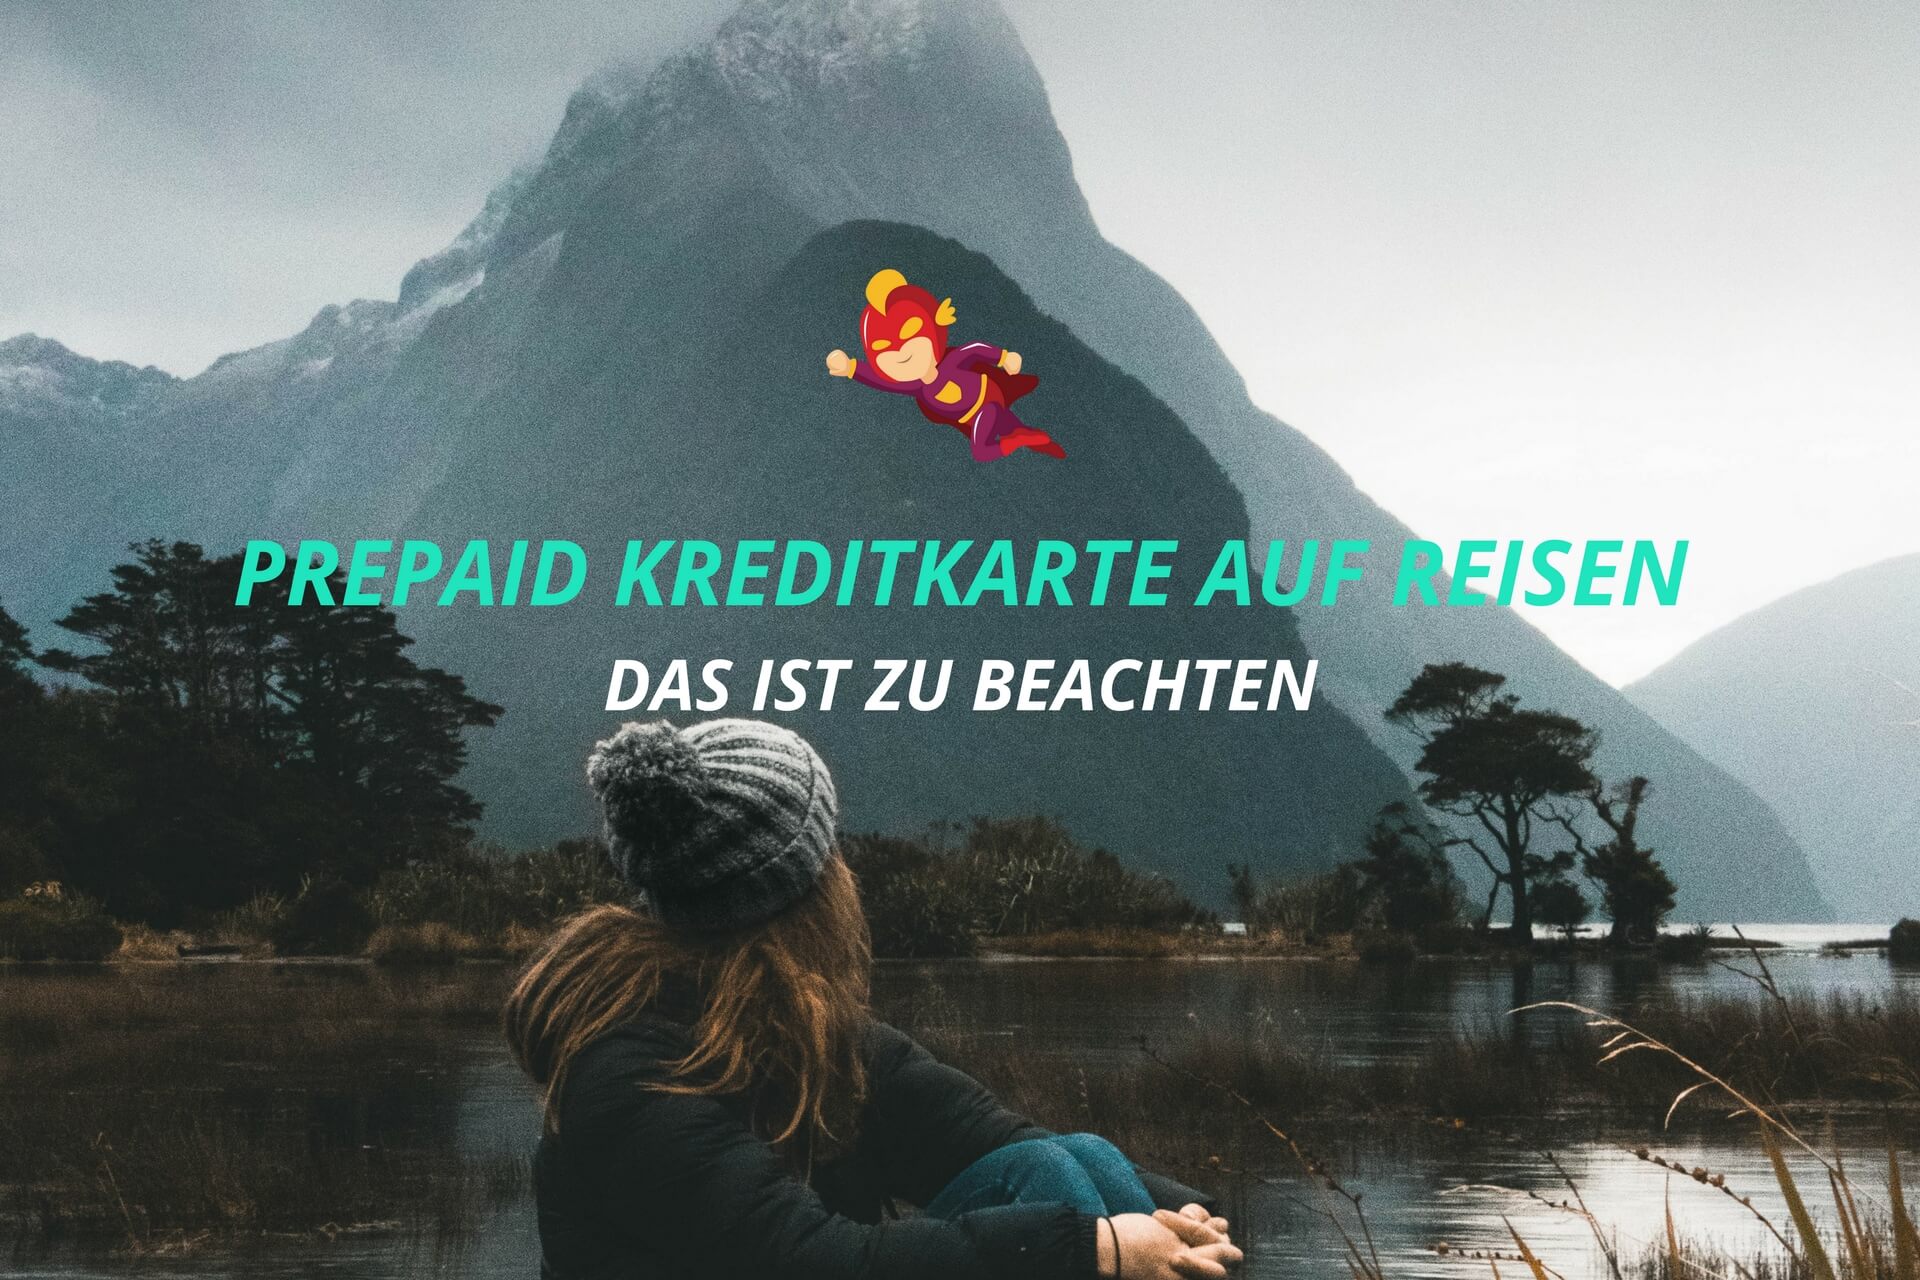 Prepaid Kreditkarte auf Reisen - Die beste Reise Prepaid Kreditkarte - Finanzhelden.org